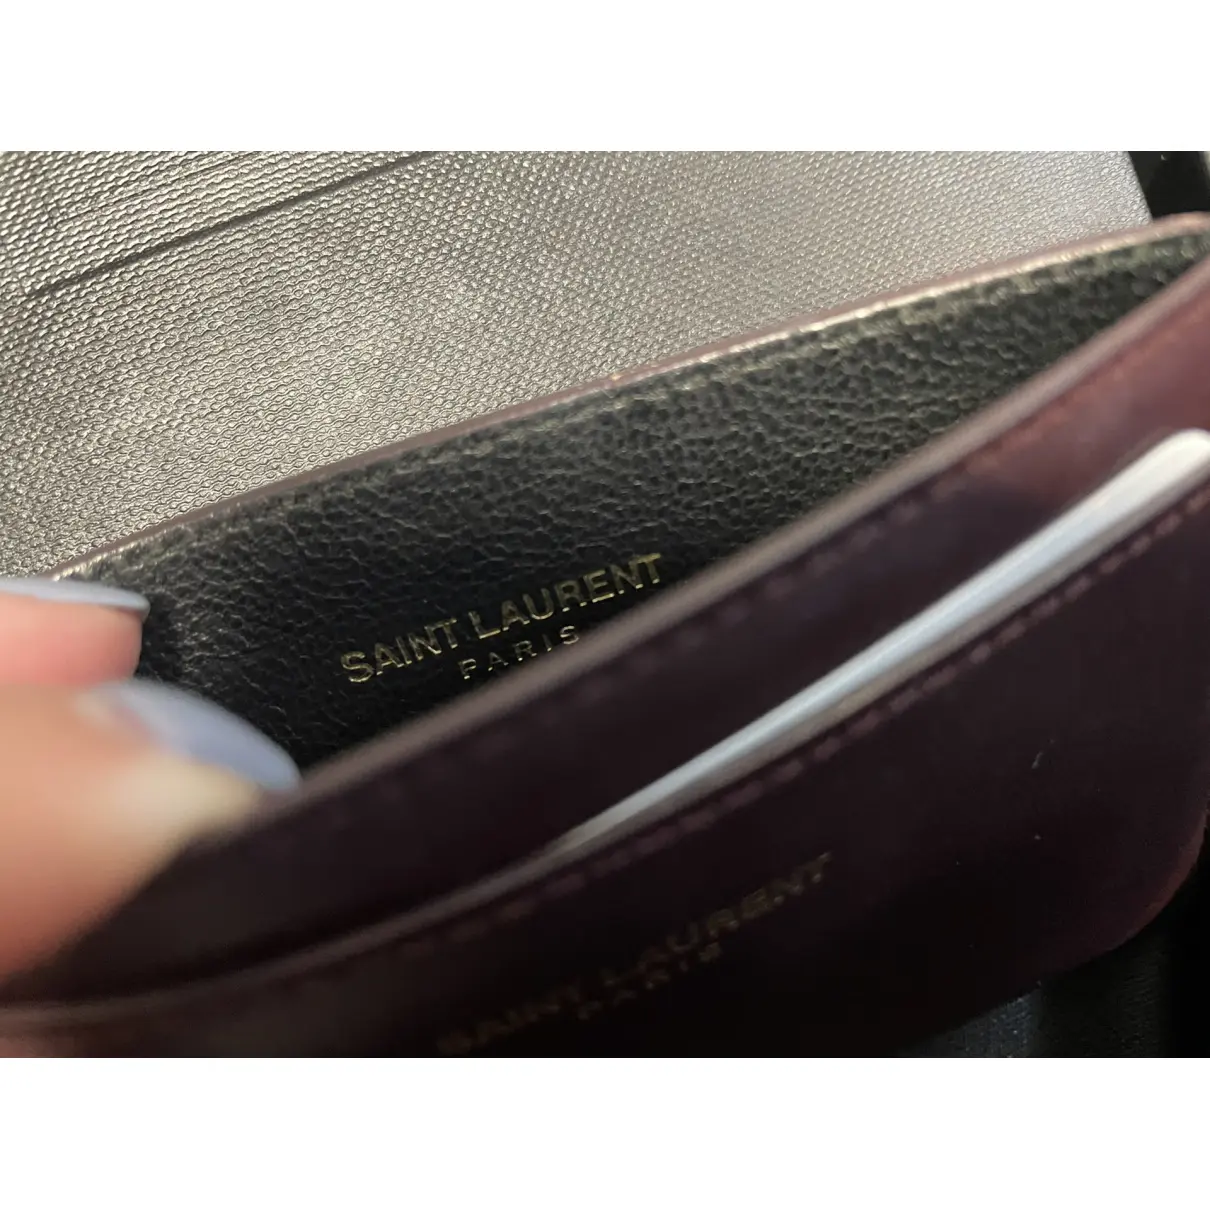 Luxury Saint Laurent Purses, wallets & cases Women